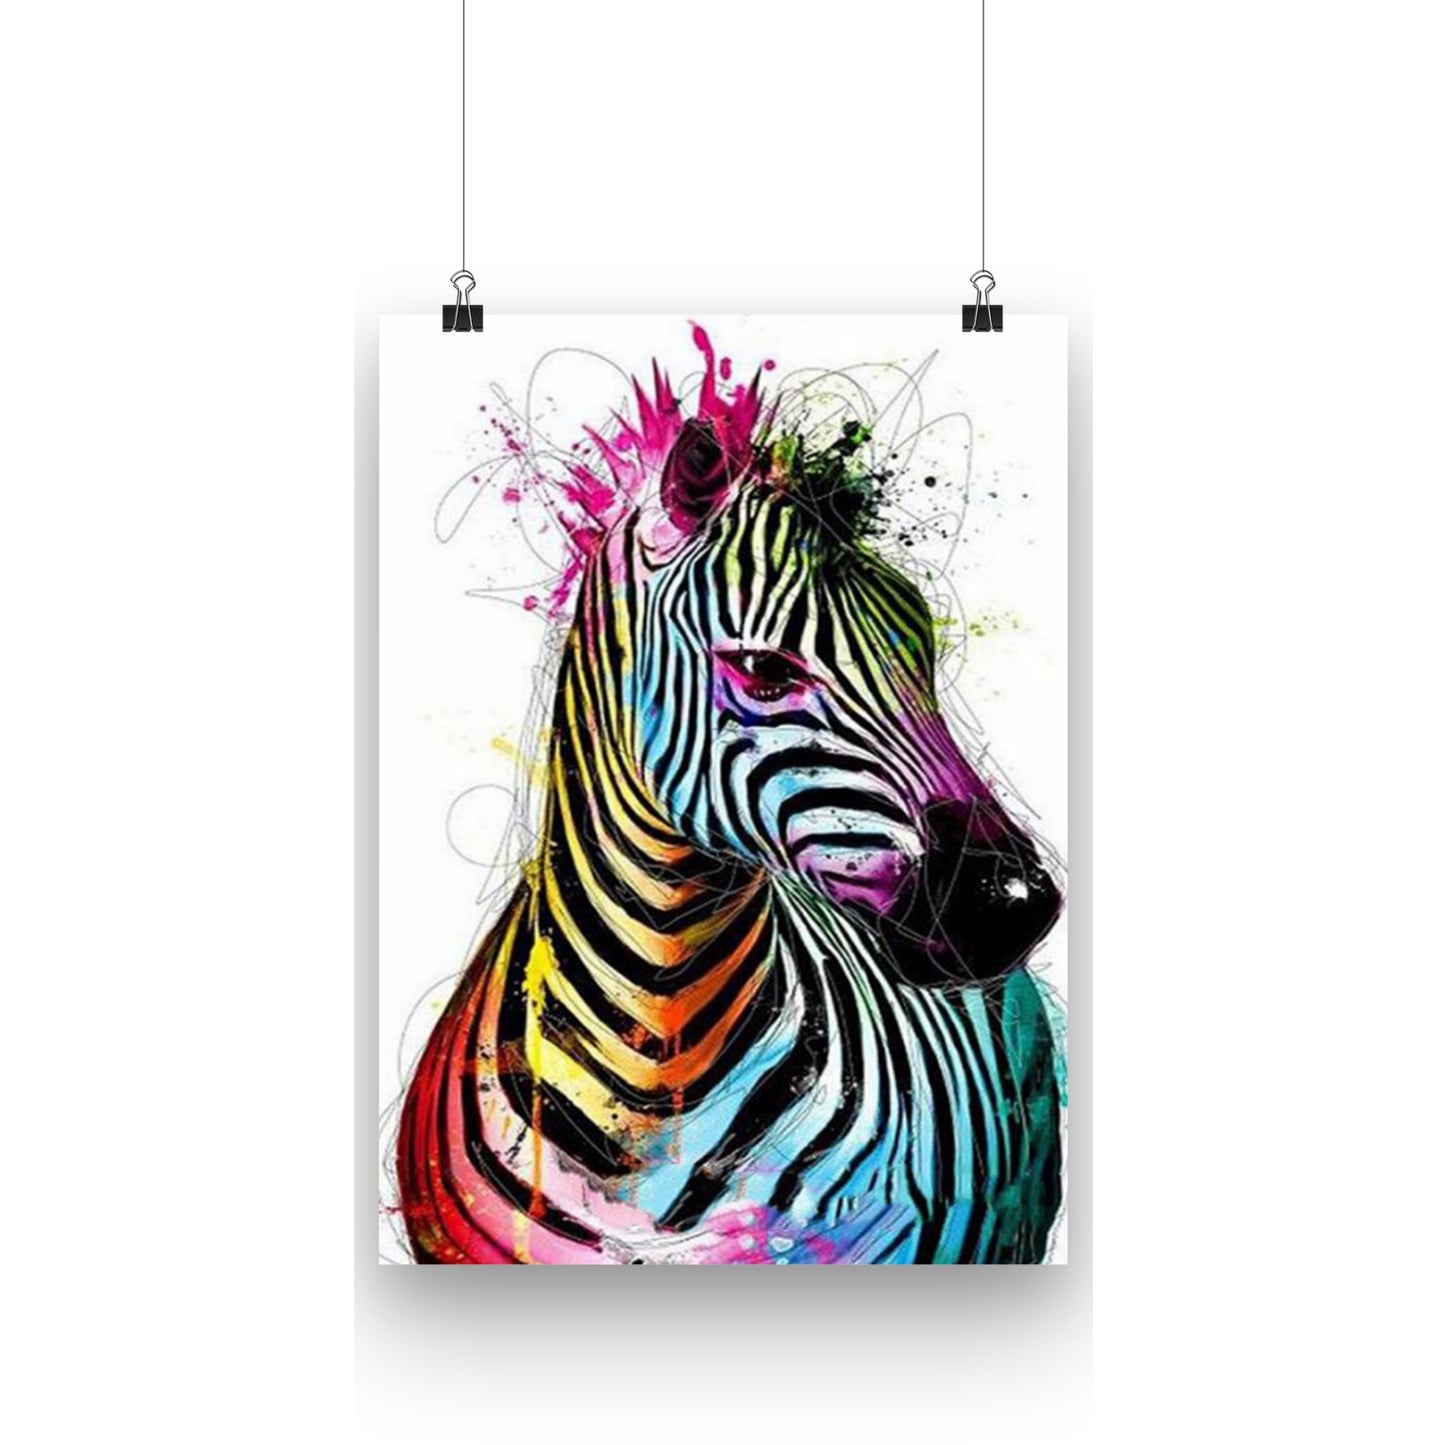 Måla efter nummer Rainbow Zebra. Fantastisk målning med motiv av en färgglad Zebra. Mycket färger och vackra detaljer.  I kitet ingår allt du behöver för att lyckas med din målning. Starta din nya hobby och beställ ditt kit idag! 